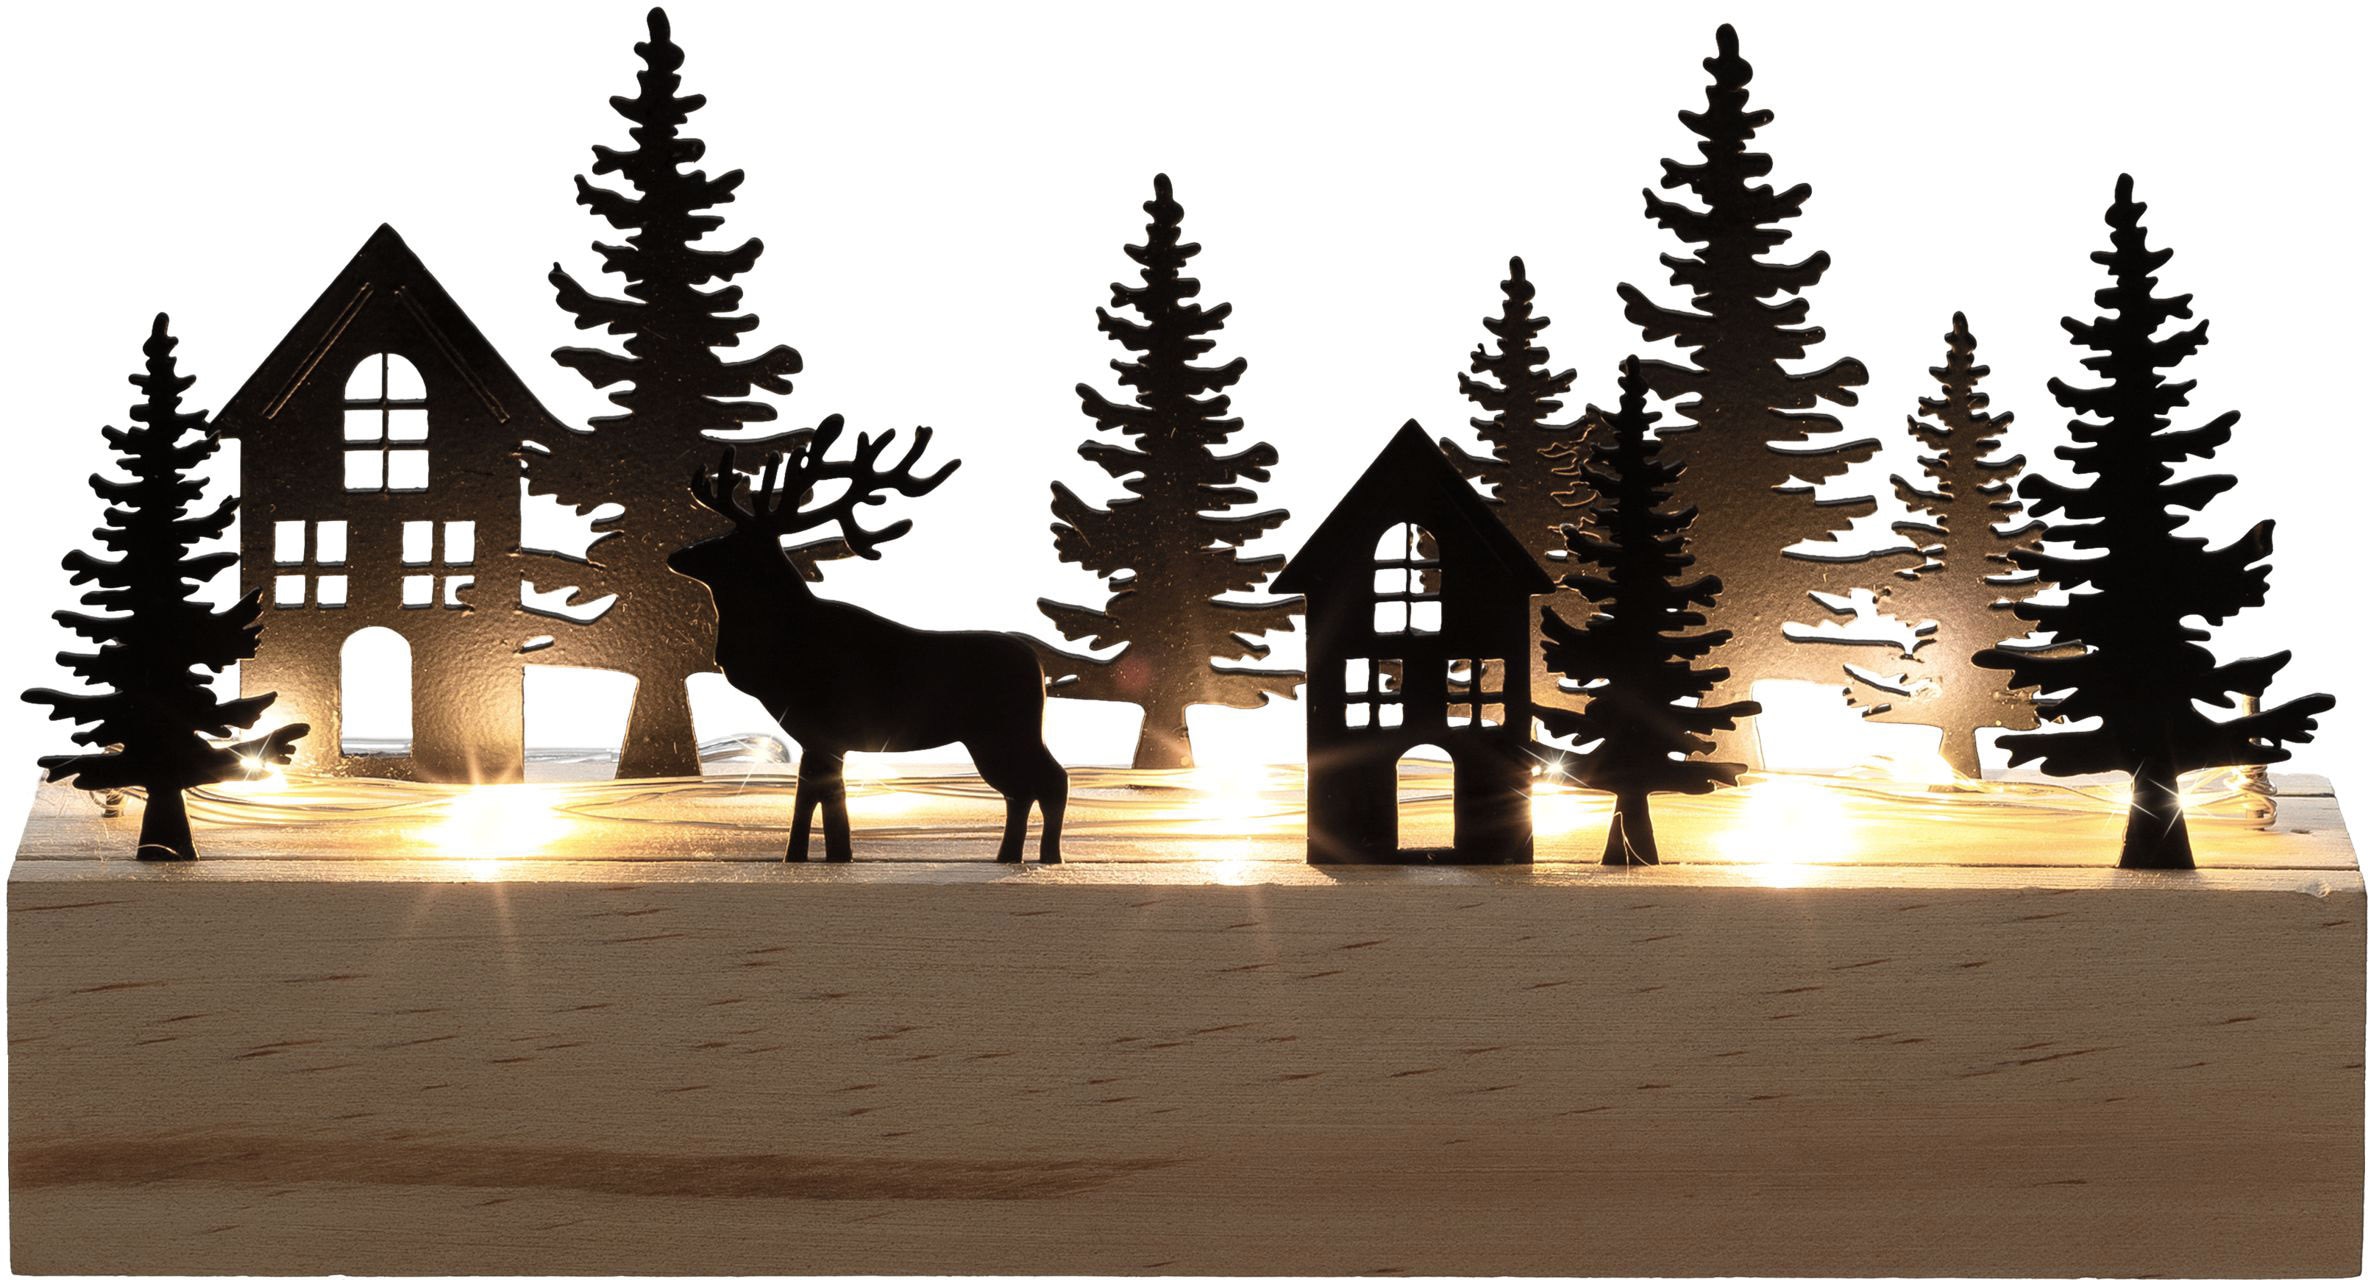 Creativ light Weihnachtsszene "Weihnachtsdeko mit LED-Beleuchtung", Landschaft mit Tannen, Häusern und Hirsch